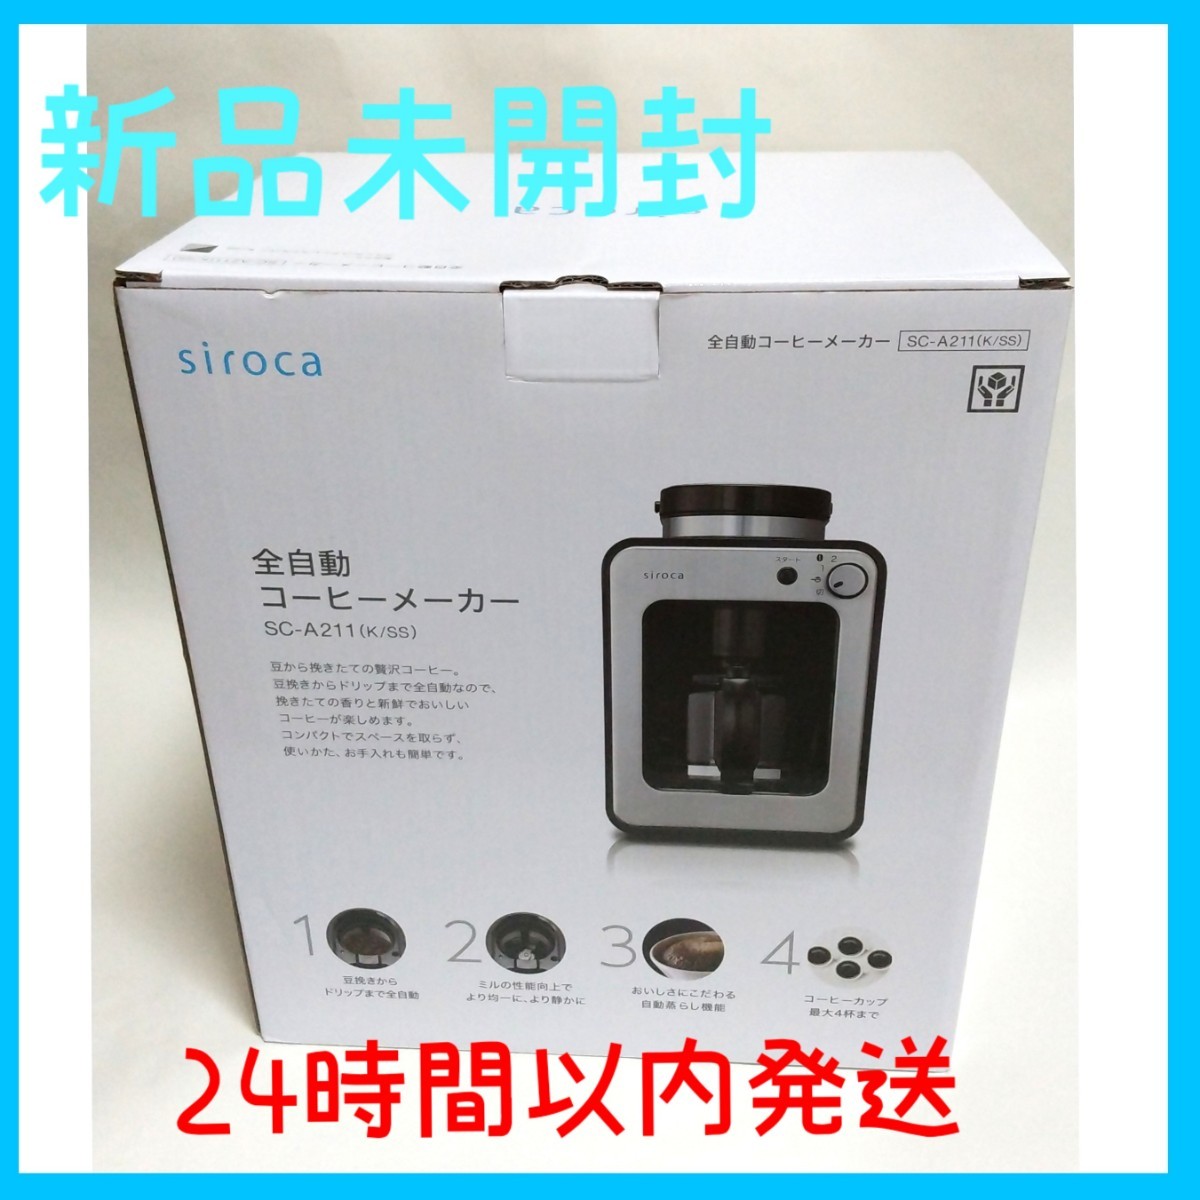 新品未開封 シロカ siroca 全自動コーヒーメーカー SC-A211 未使用